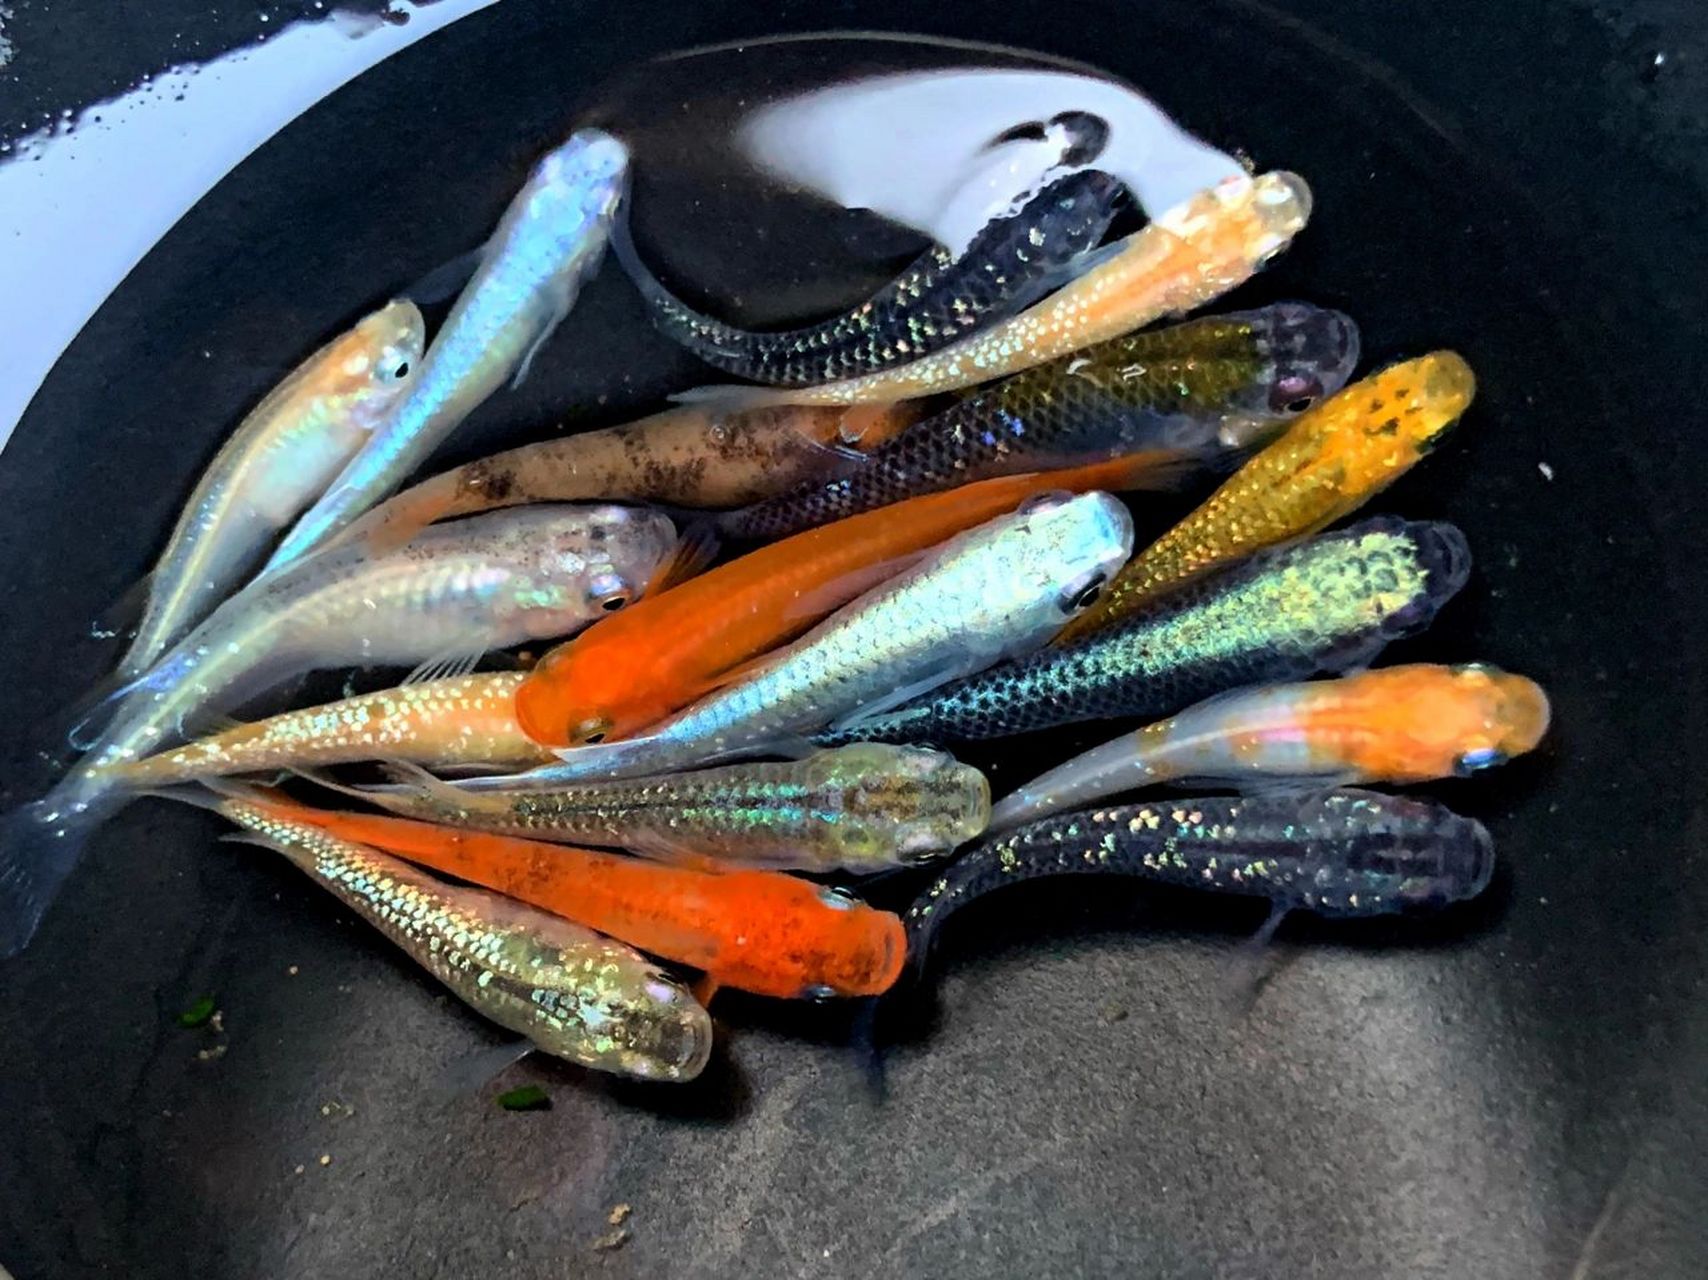 观背青鳉各品种大杂烩  近期给鱼友们选的混搭,鱼好捞,拍照是真的很难